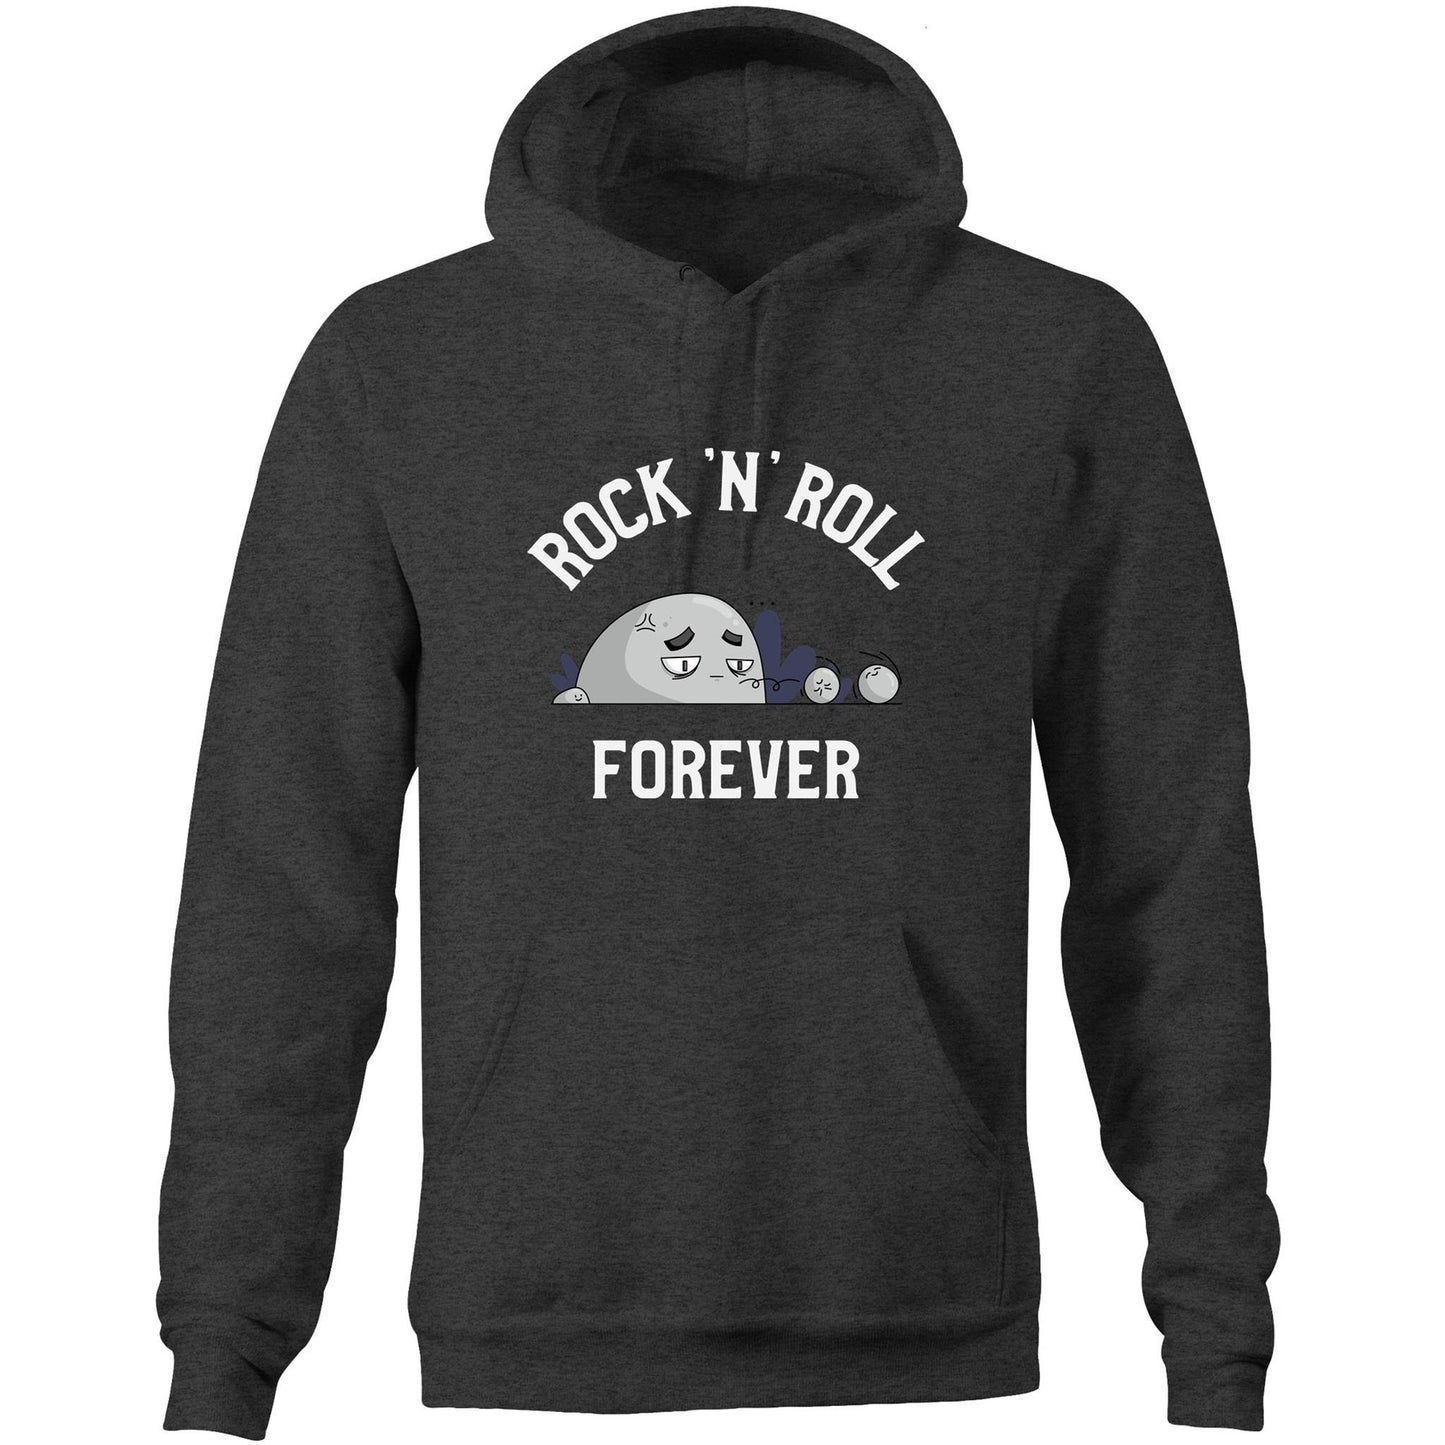 Rock 'N' Roll Forever - Pocket Hoodie Sweatshirt Asphalt Marle Hoodie Music